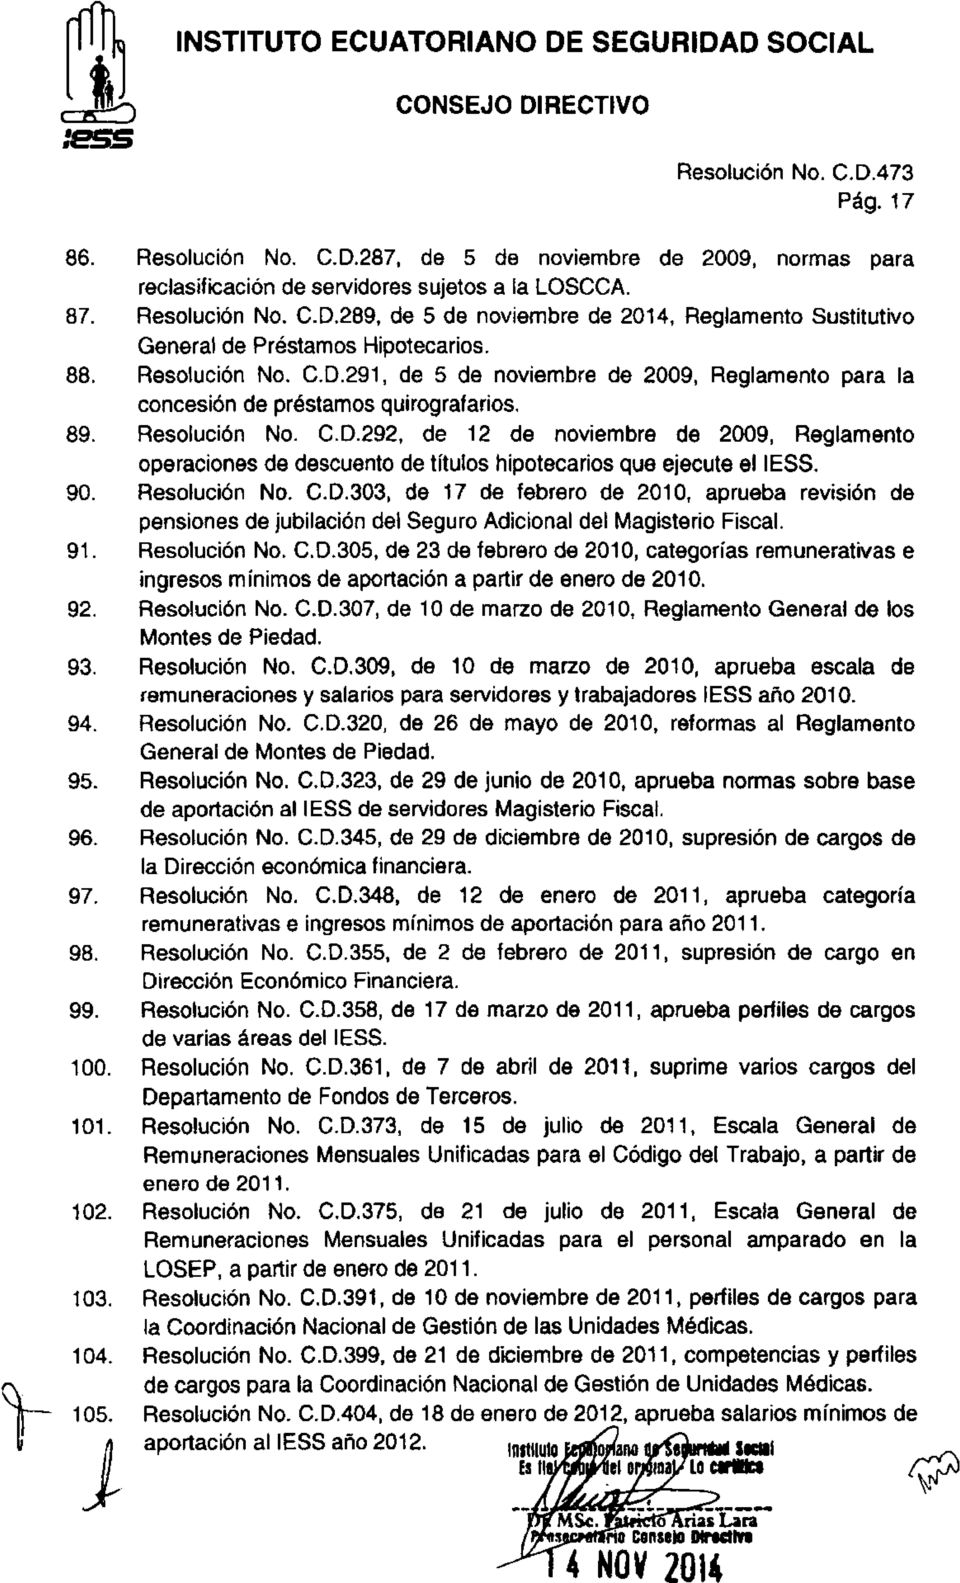 289, de 5 de noviembre de 2014, Reglamento Sustitutivo General de Préstamos Hipotecarios. Resolución No. C.D.291, de 5 de noviembre de 2009, Reglamento para la concesión de préstamos quirografarios.